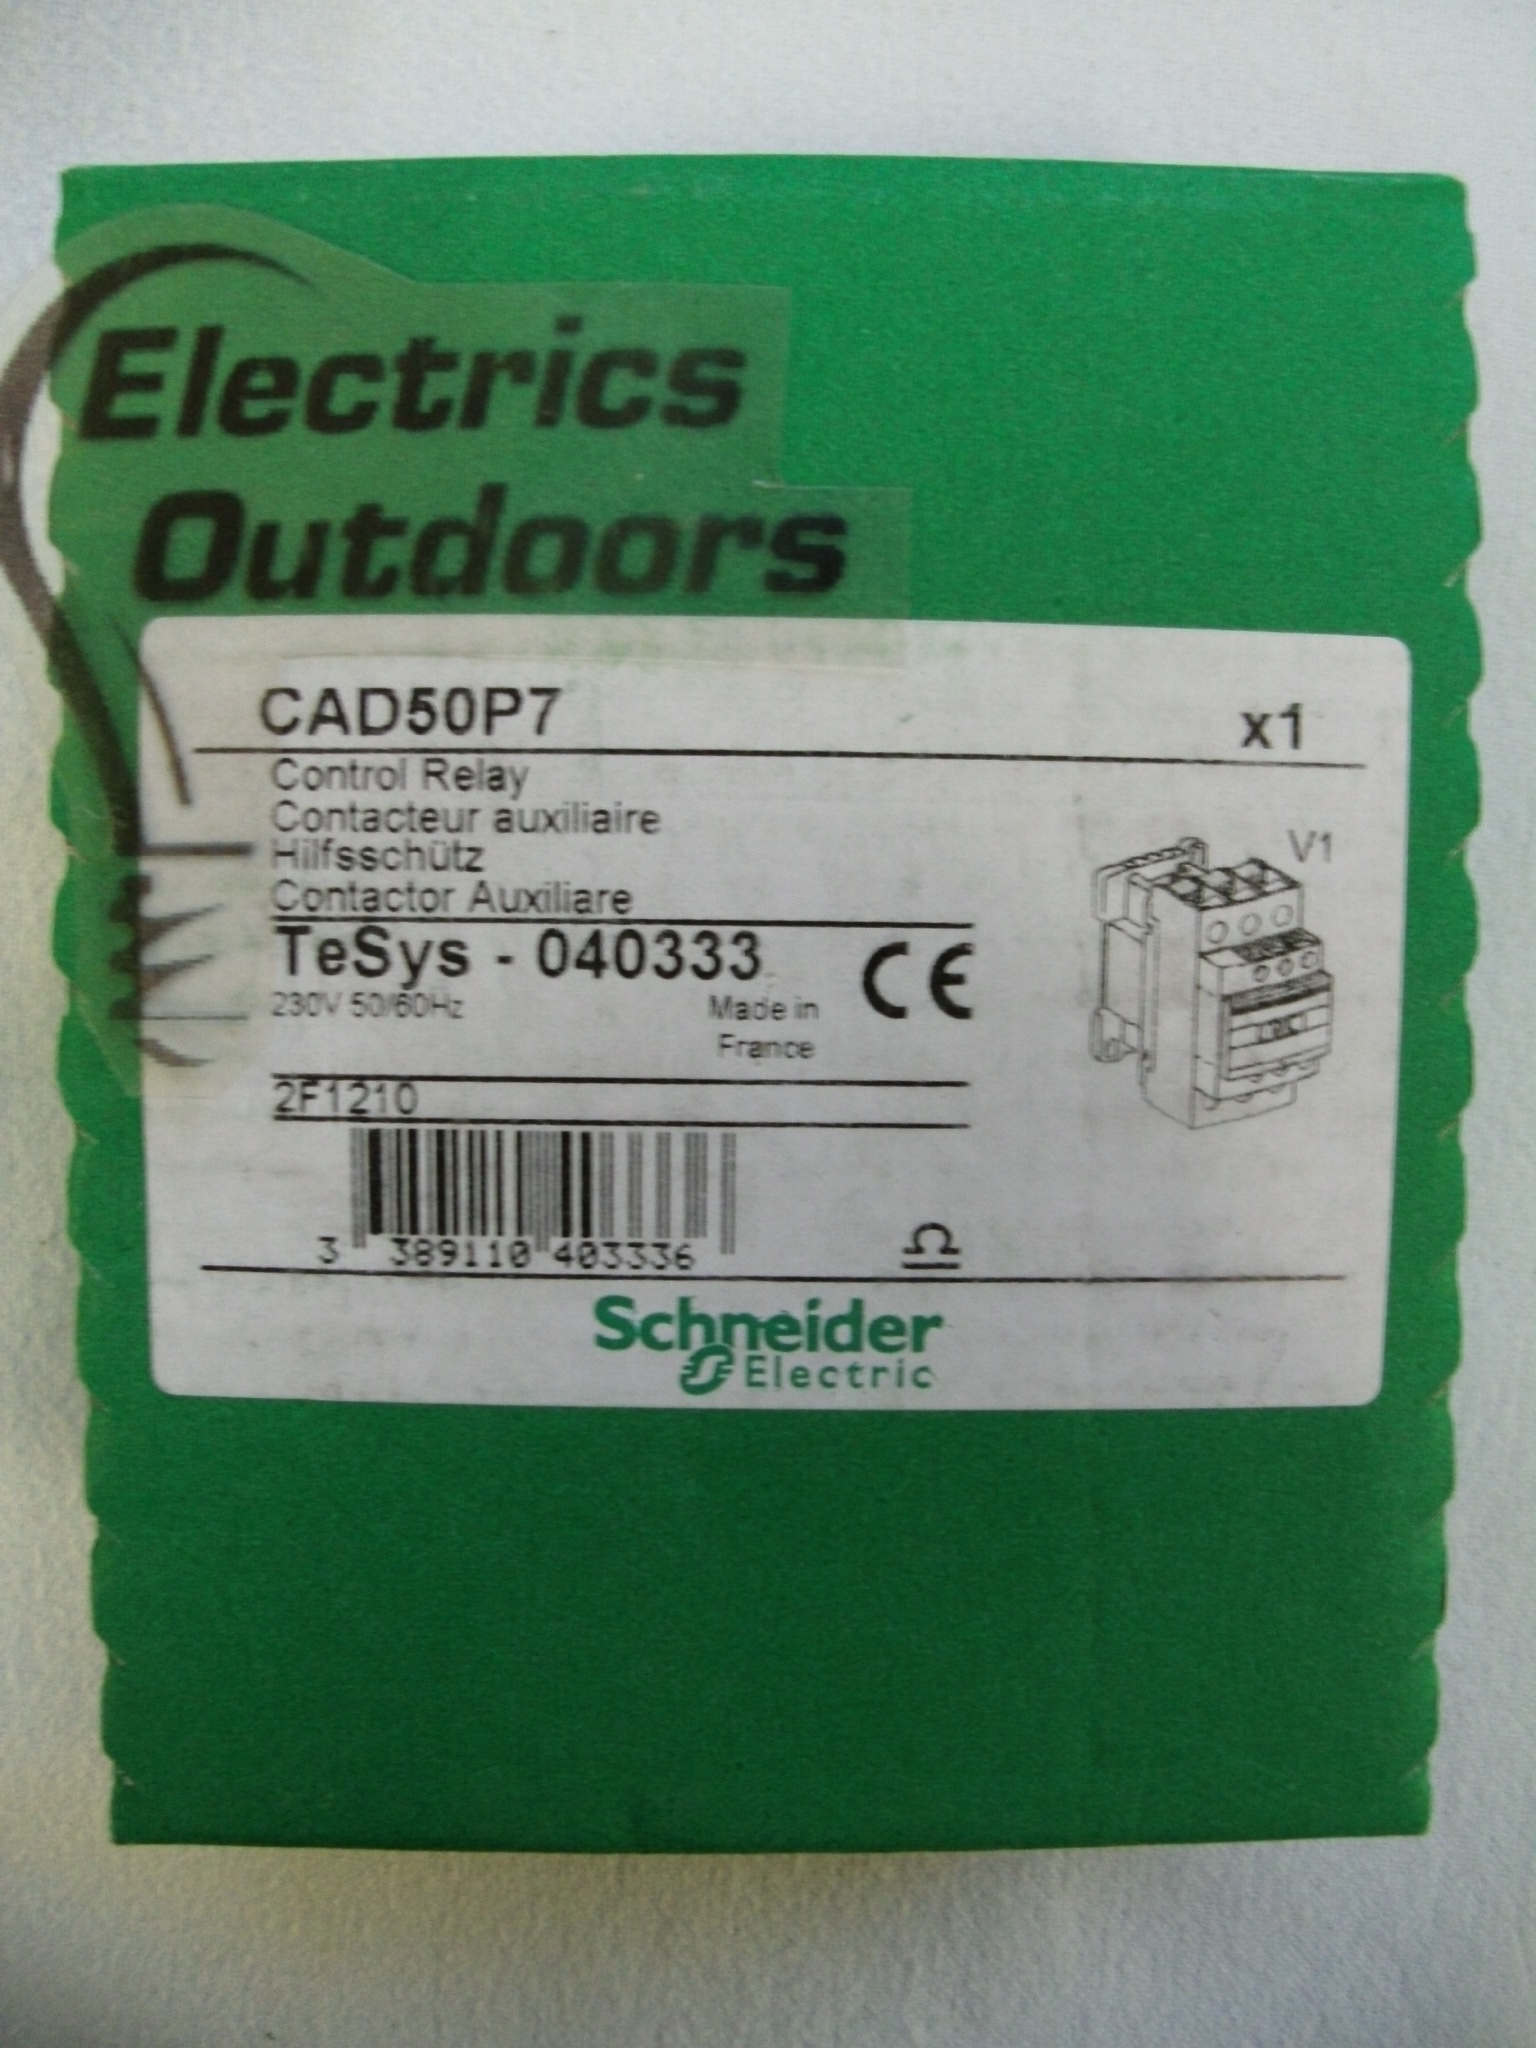 SCHNEIDER ELECTRIC 230V 50Hz 60Hz CONTROL RELAY TeSys 040333 CAD50P7 2F1210